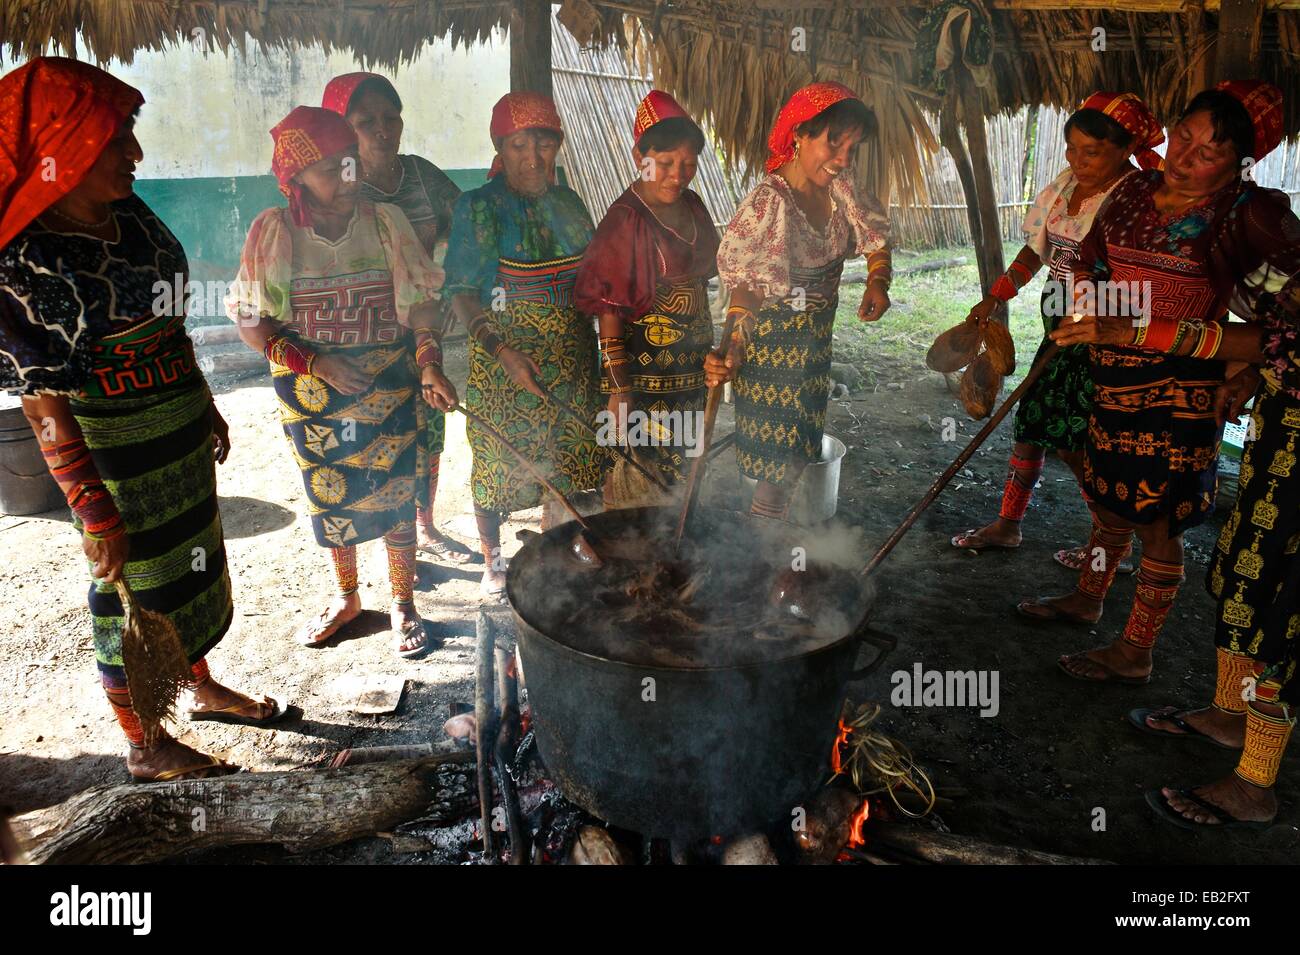 Cuna donne la cottura chicha. Tra i Cuna o Gundetule del San Blas catena di isole, "chicha fuerte" si riferisce al mais fermentato e la nonna saliva miscela che è goduto in speciali o i giorni santi. Foto Stock